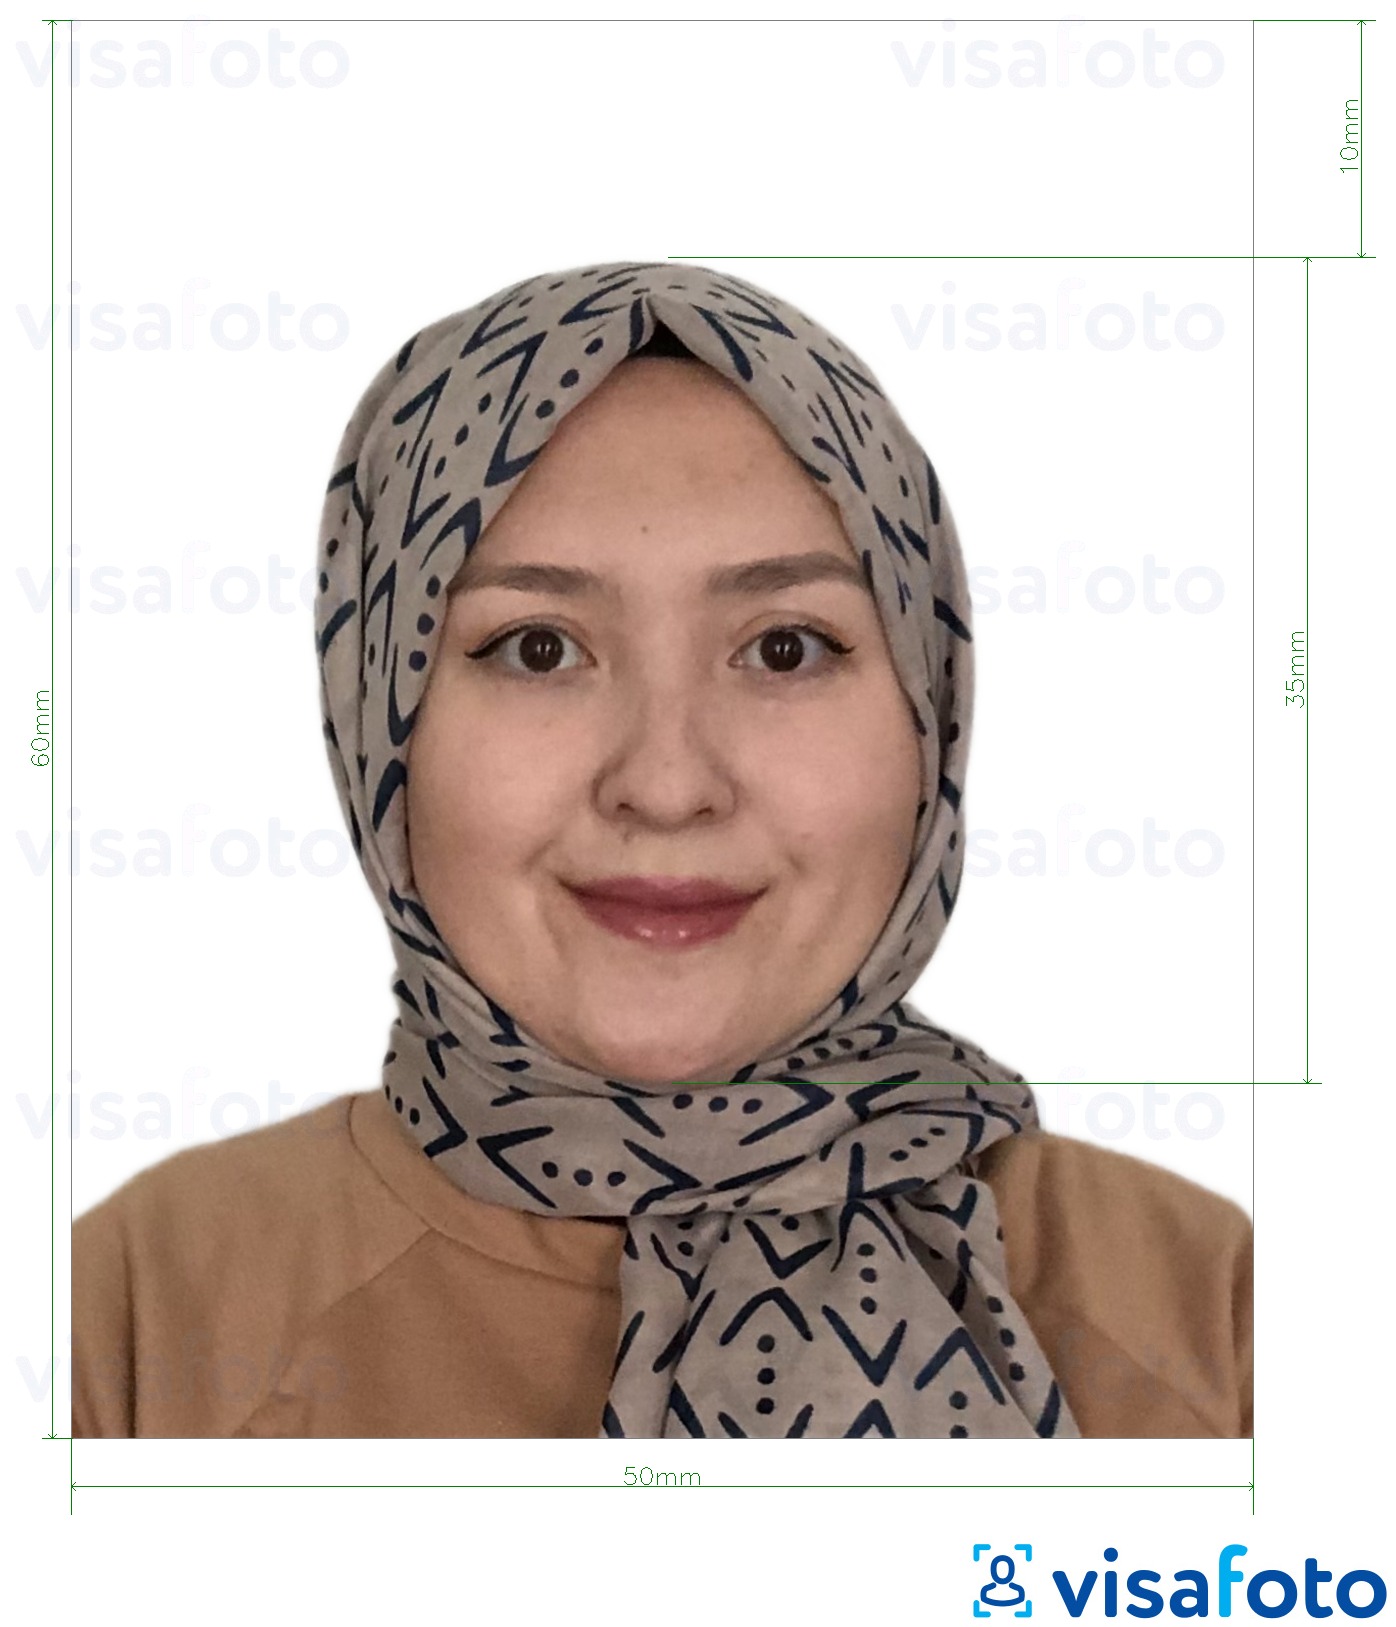 Príklad fotografie pre Turkménsko vízum 5x6 cm (50x60 mm) s presnou špecifikáciou veľkosti